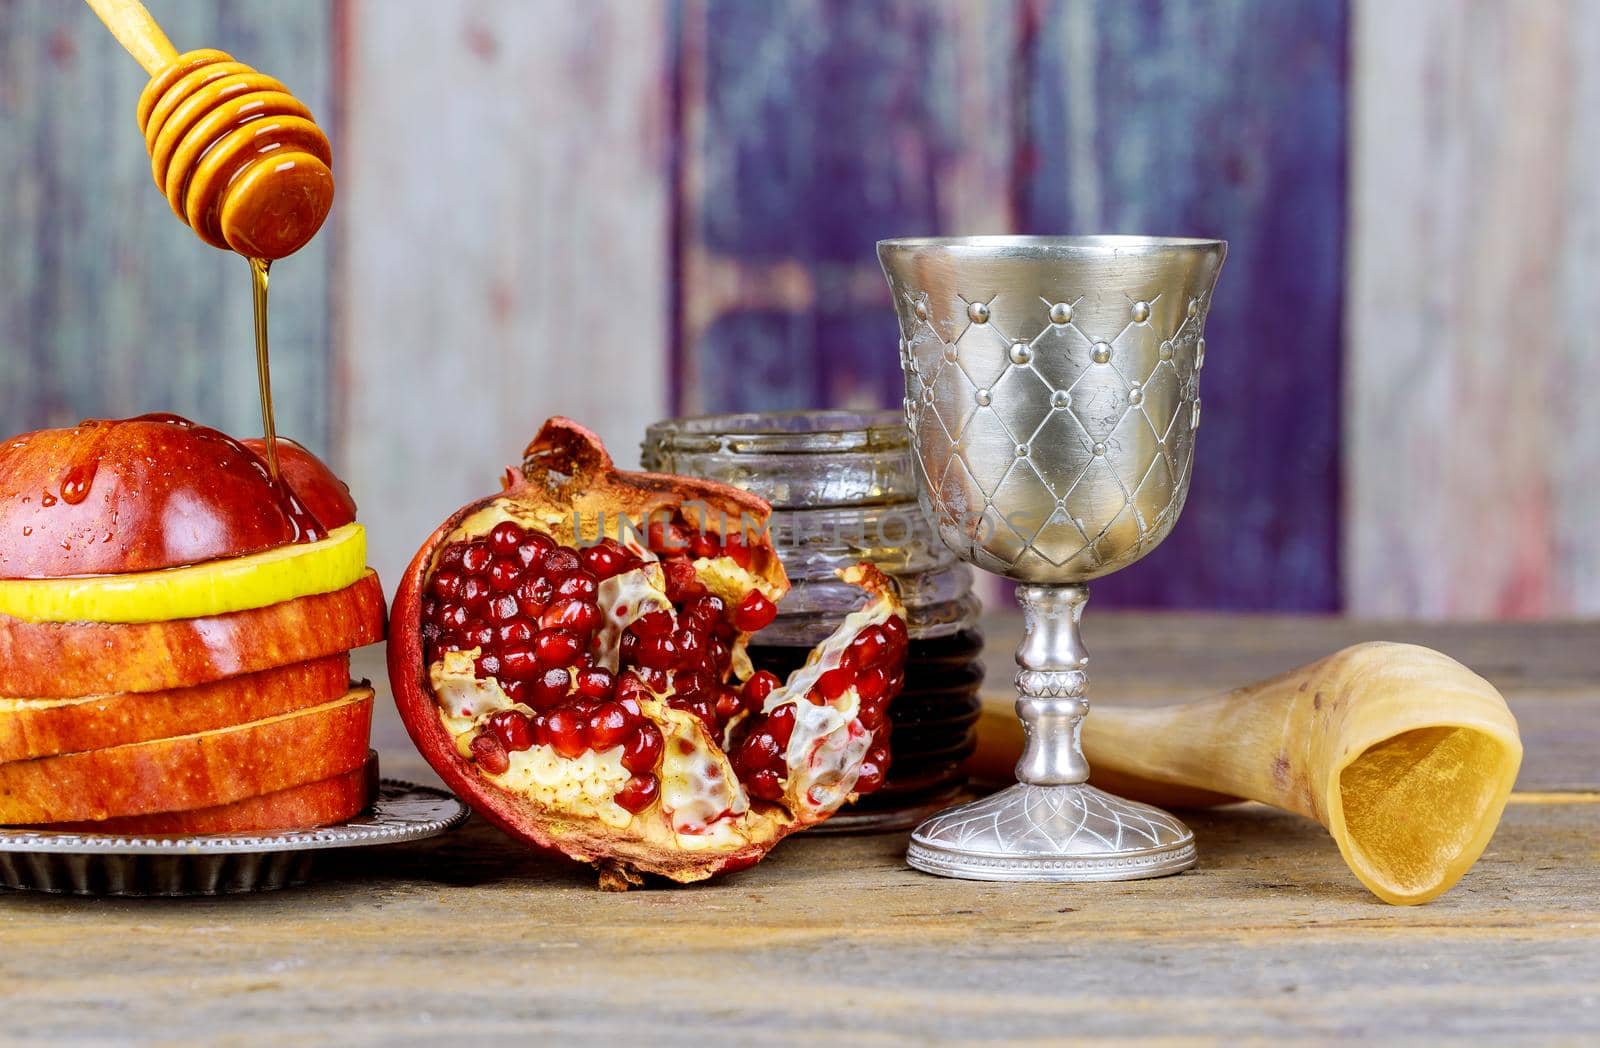 Jewish New Year of traditional holiday symbols Rosh Hashanah celebration on festive table